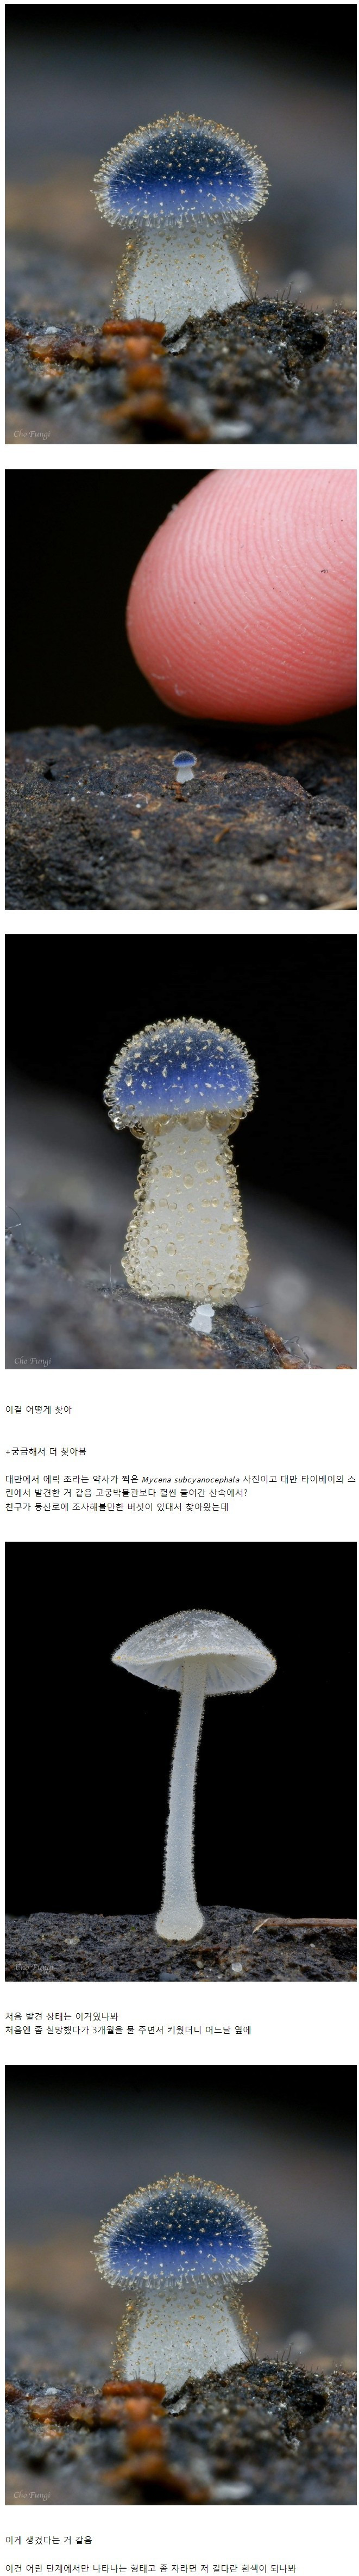 아직도 미기록종 신규 버섯이 발견되는 이유 이미지 #1